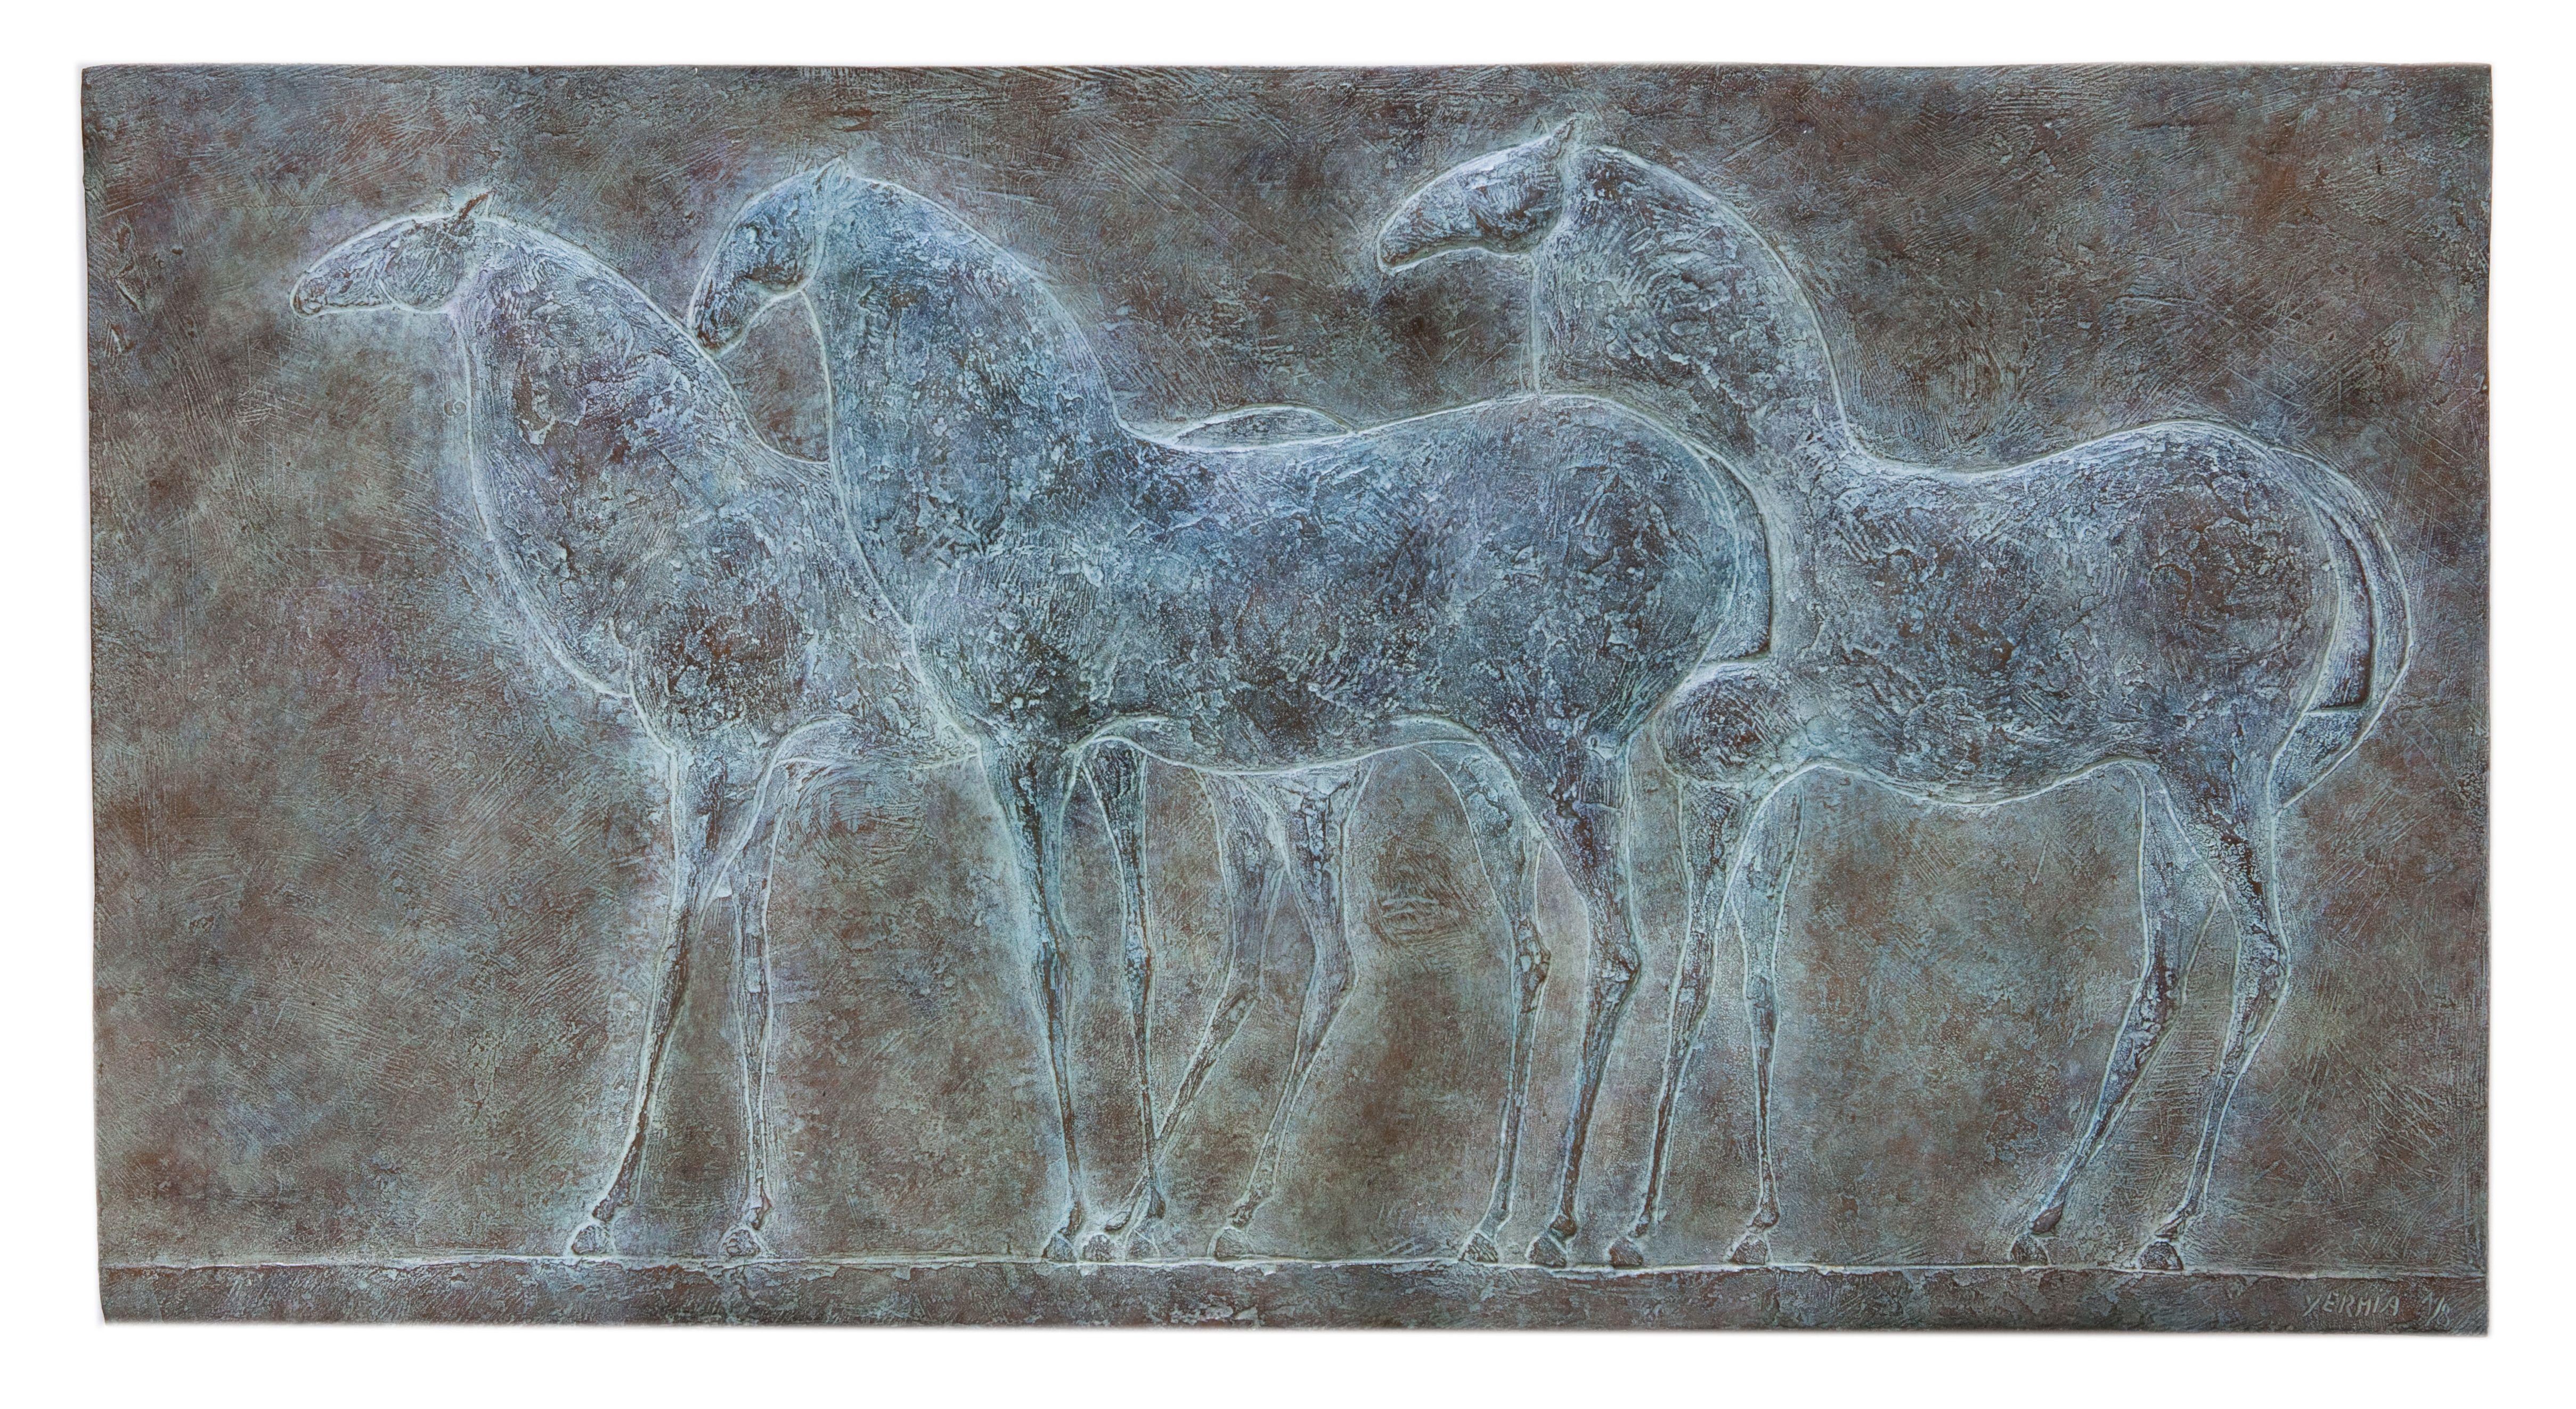 Three Horses est une sculpture en bas-relief en bronze de l'artiste contemporain français Pierre Yermia, dont les dimensions sont de 42 × 81 × 2 cm (16,5 × 31,9 × 0,8 in). 
La sculpture est signée et numérotée, elle fait partie d'une édition limitée